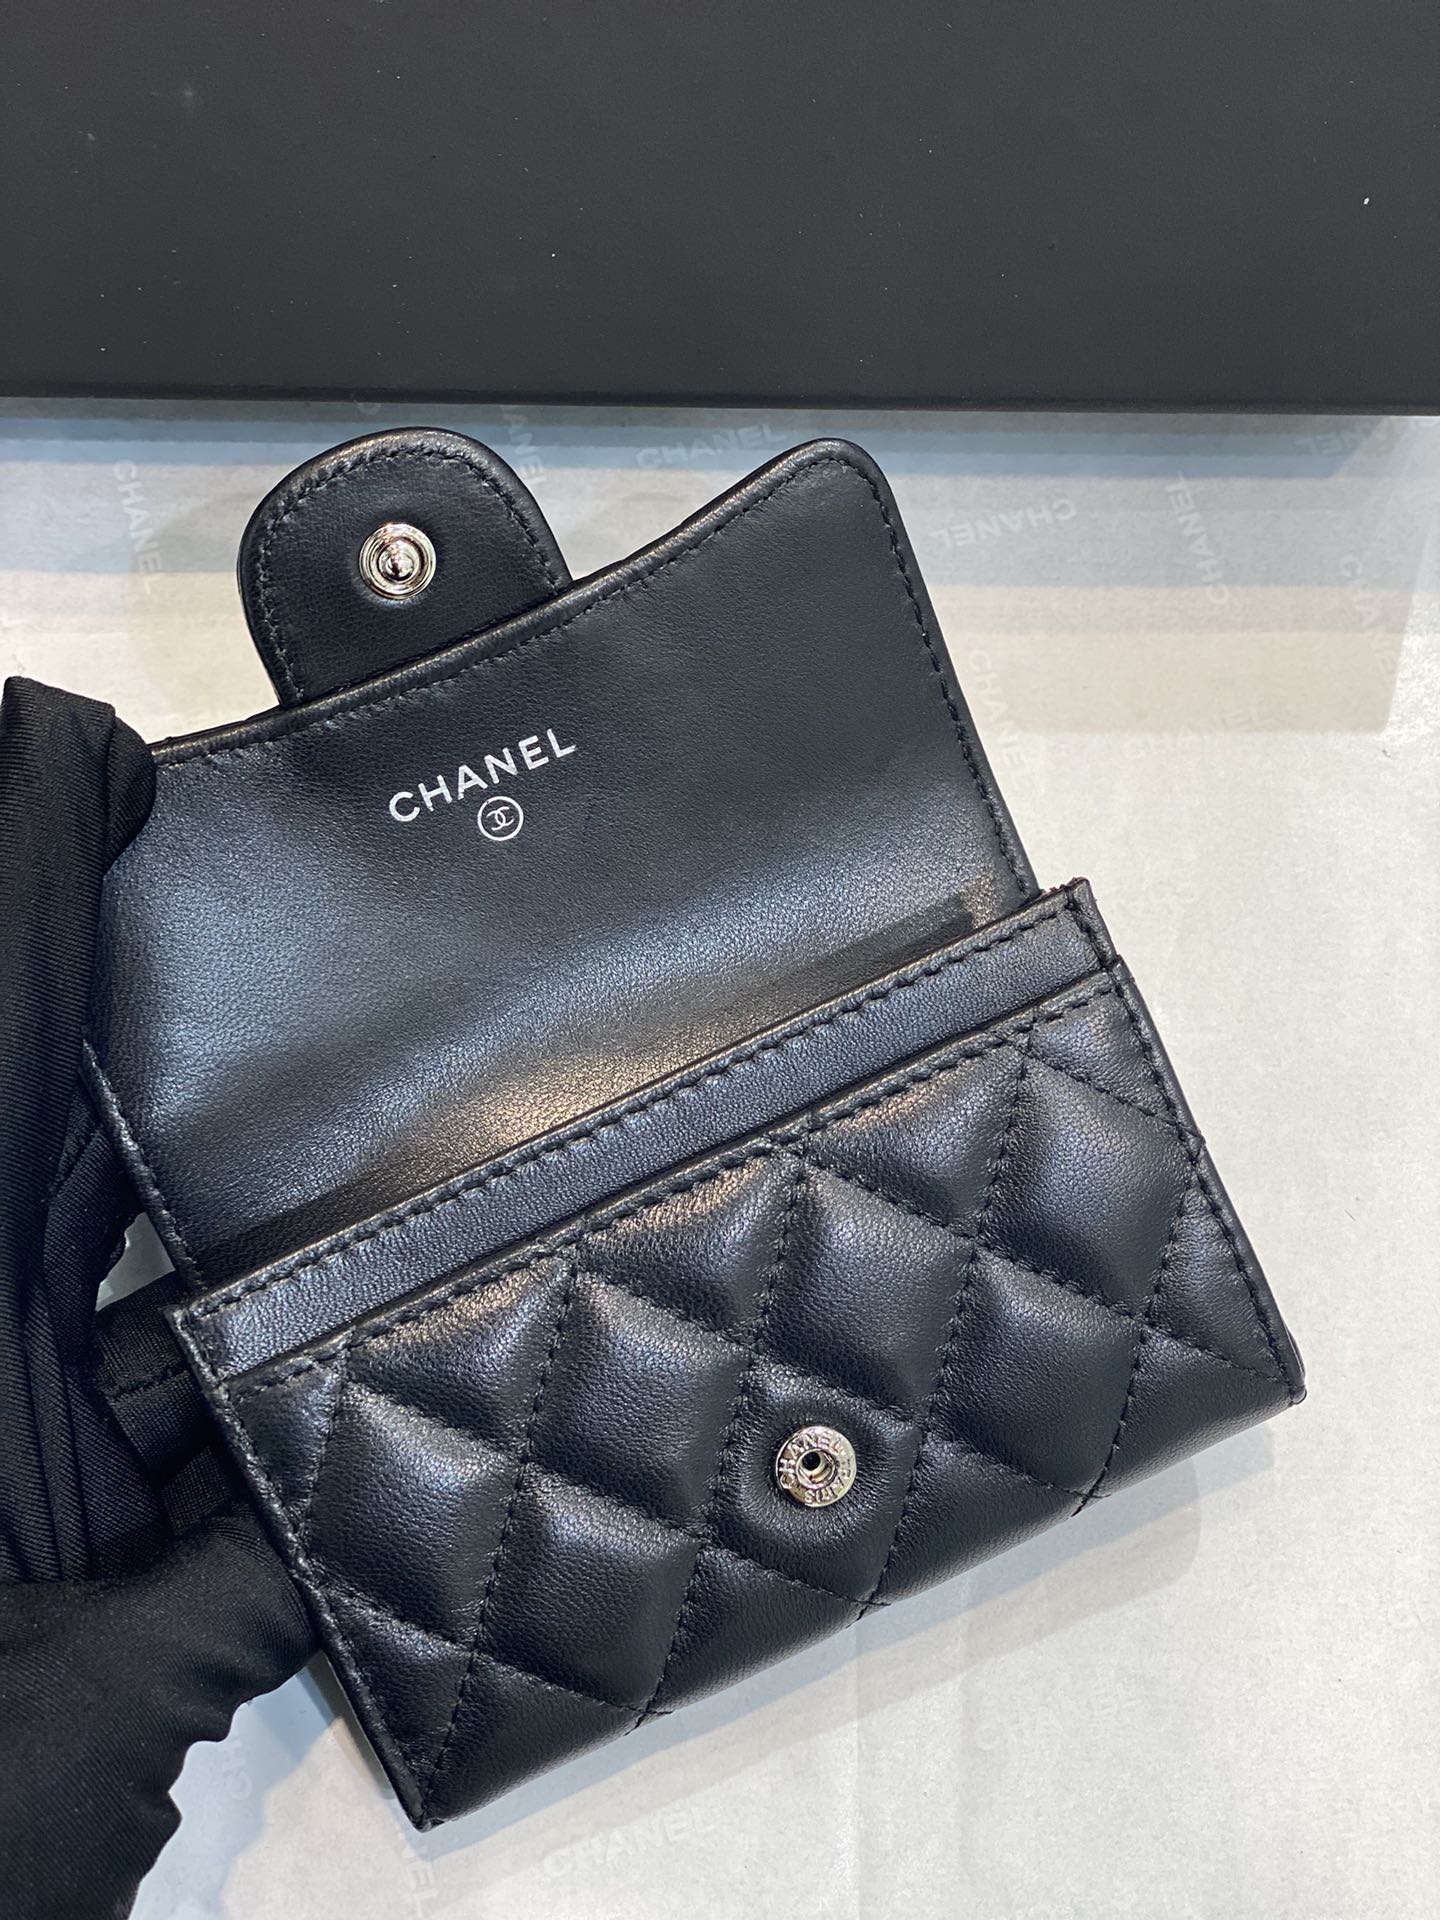 爆款 Chanel 2020新款cf卡包 11*8.5*3cm 黑色 小羊皮 银扣